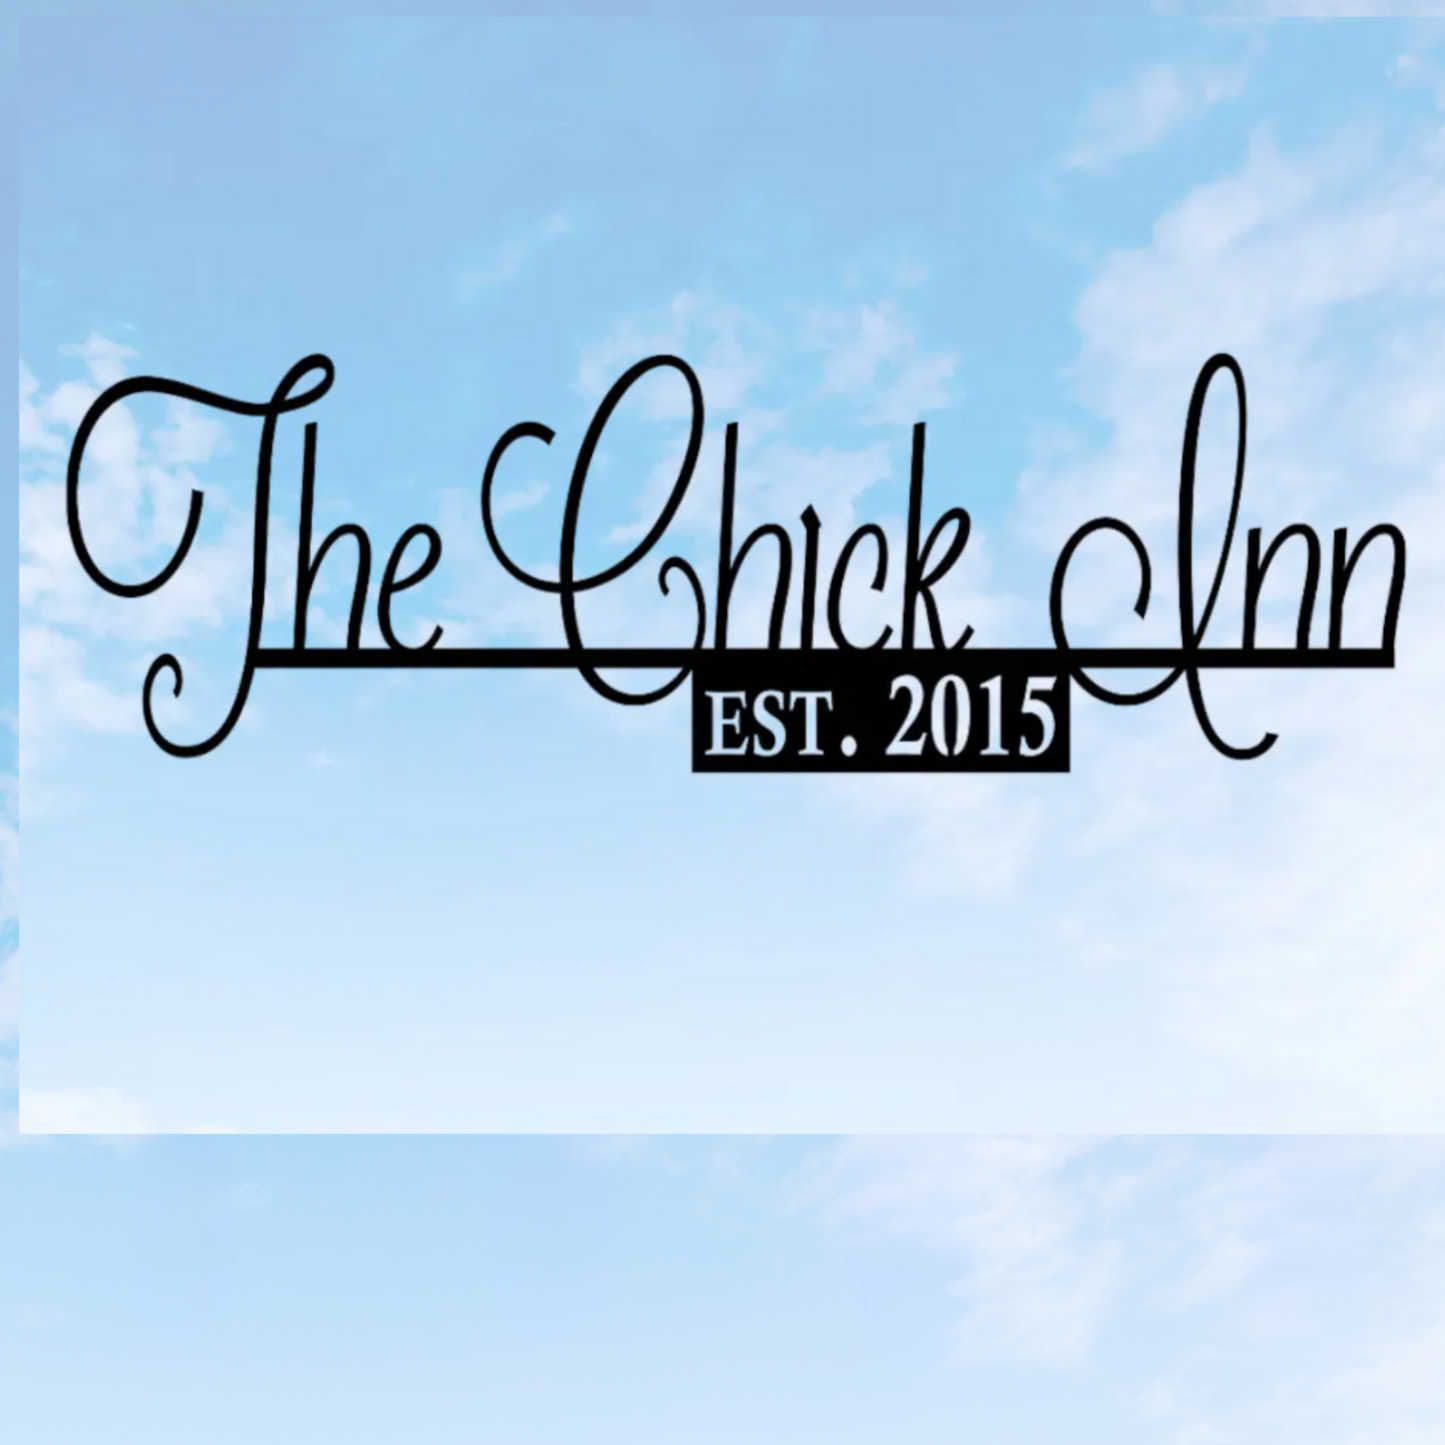 Chick Inn est Sign